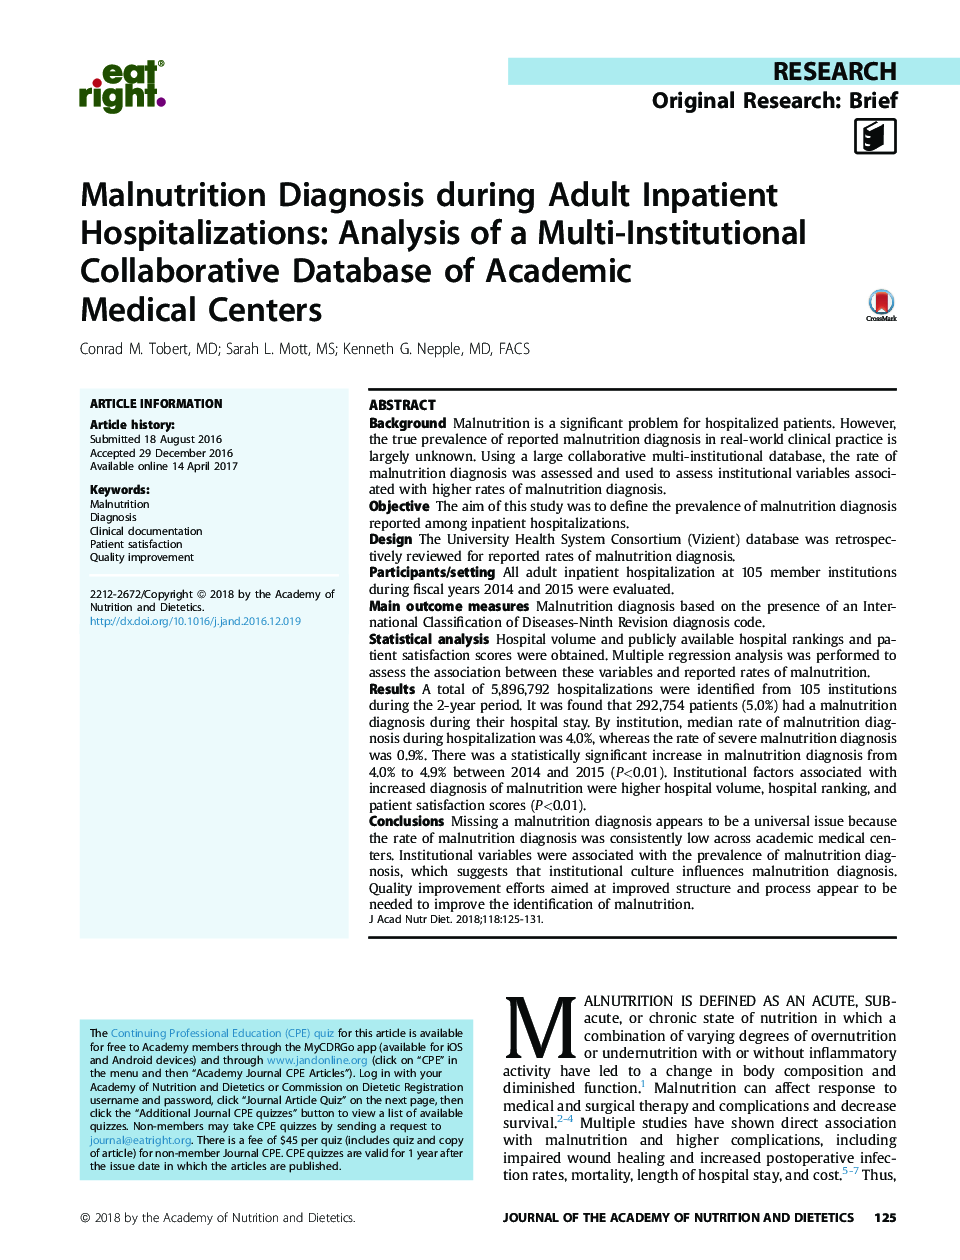 تشخیص سوء تغذیه در بیمارستان بستری بزرگسالان: تجزیه و تحلیل یک پایگاه اطلاعاتی چندگانه از مراکز علمی پزشکی 